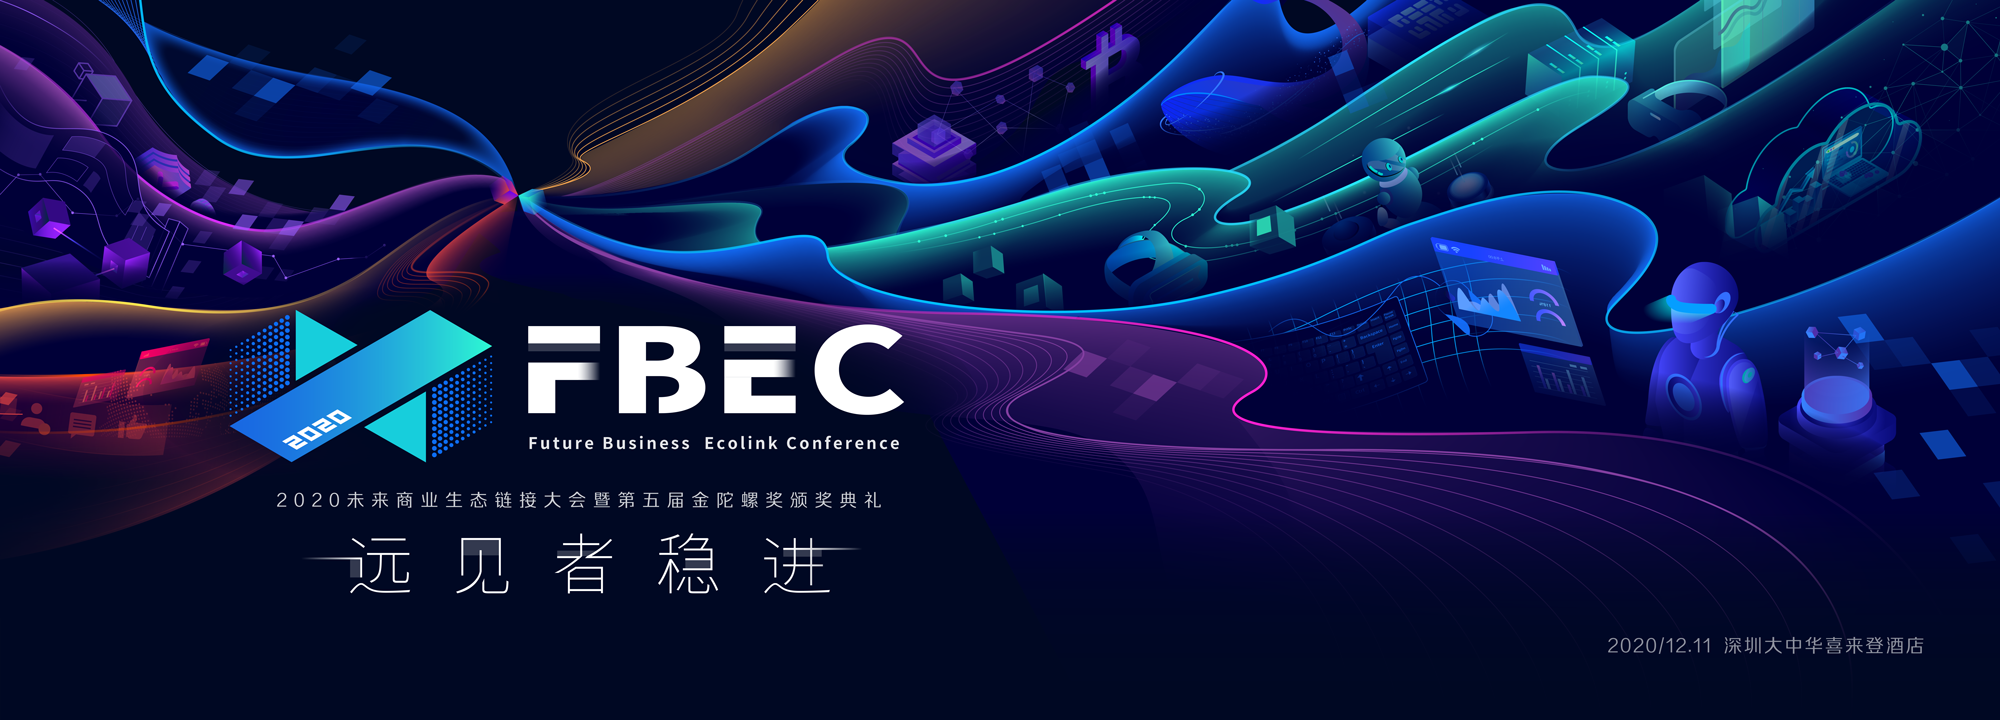 西安飞蝶虚拟现实科技有限公司CEO王亚刚将出席FBEC大会发表演讲【FBEC2020】